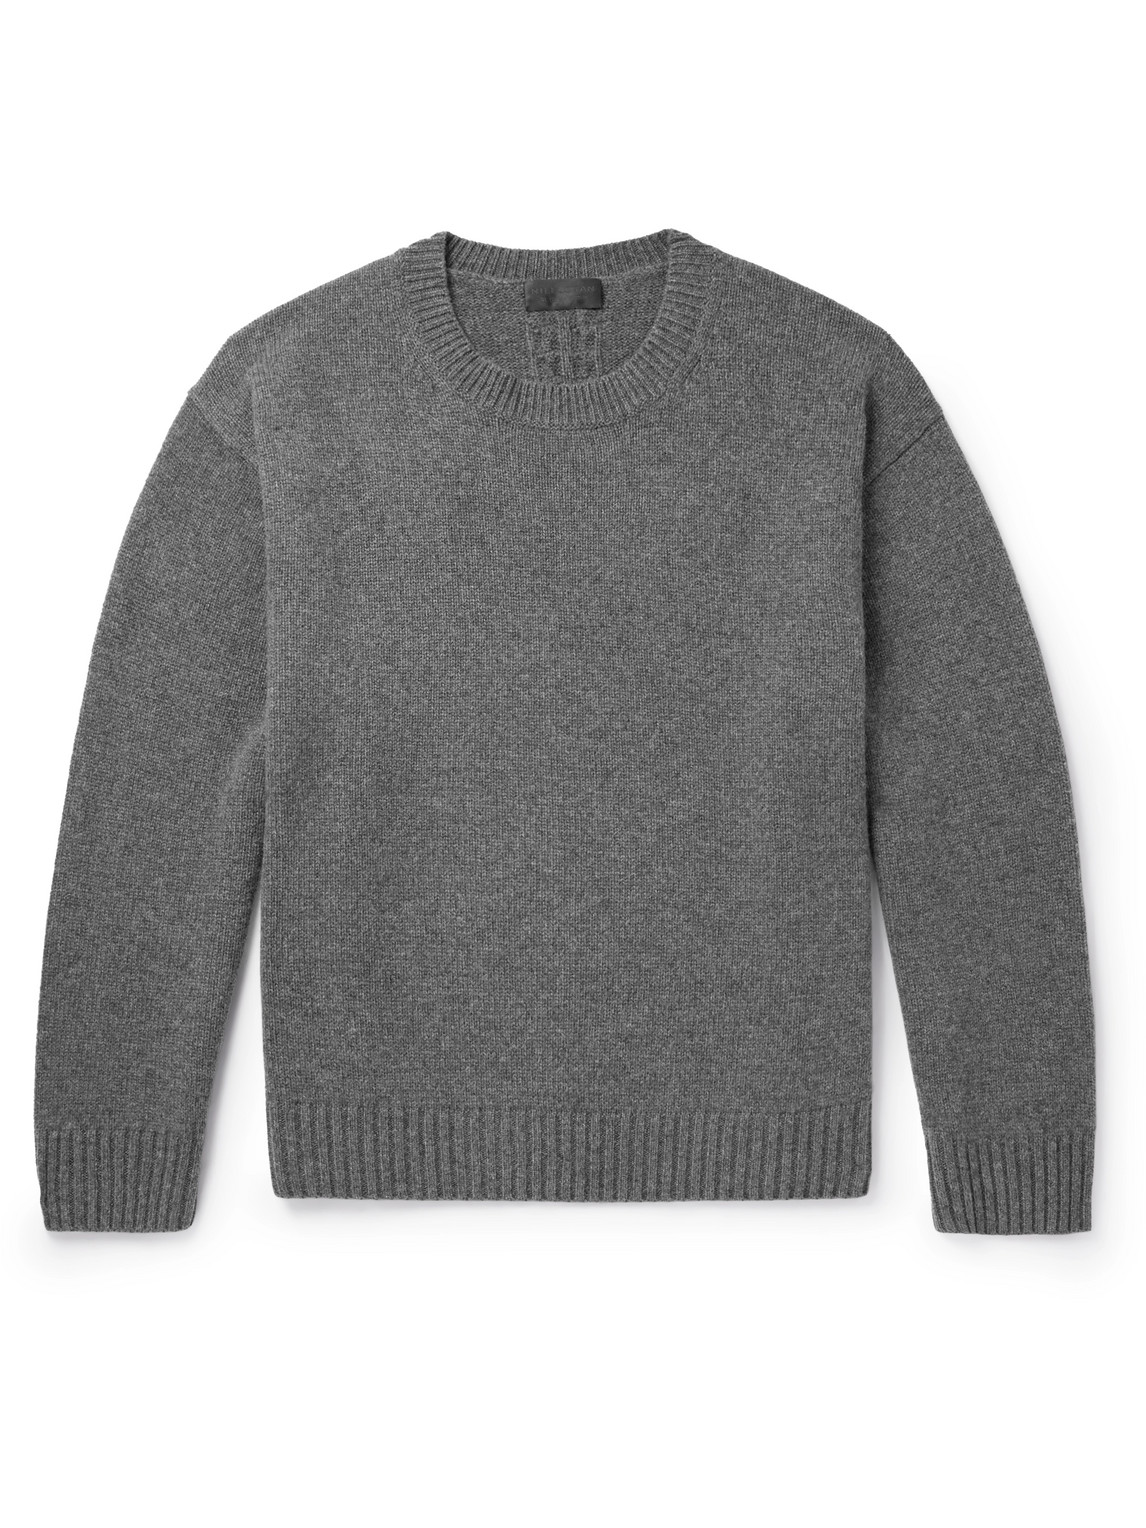 Nili Lotan Capocci Cashmere Sweater In Gray